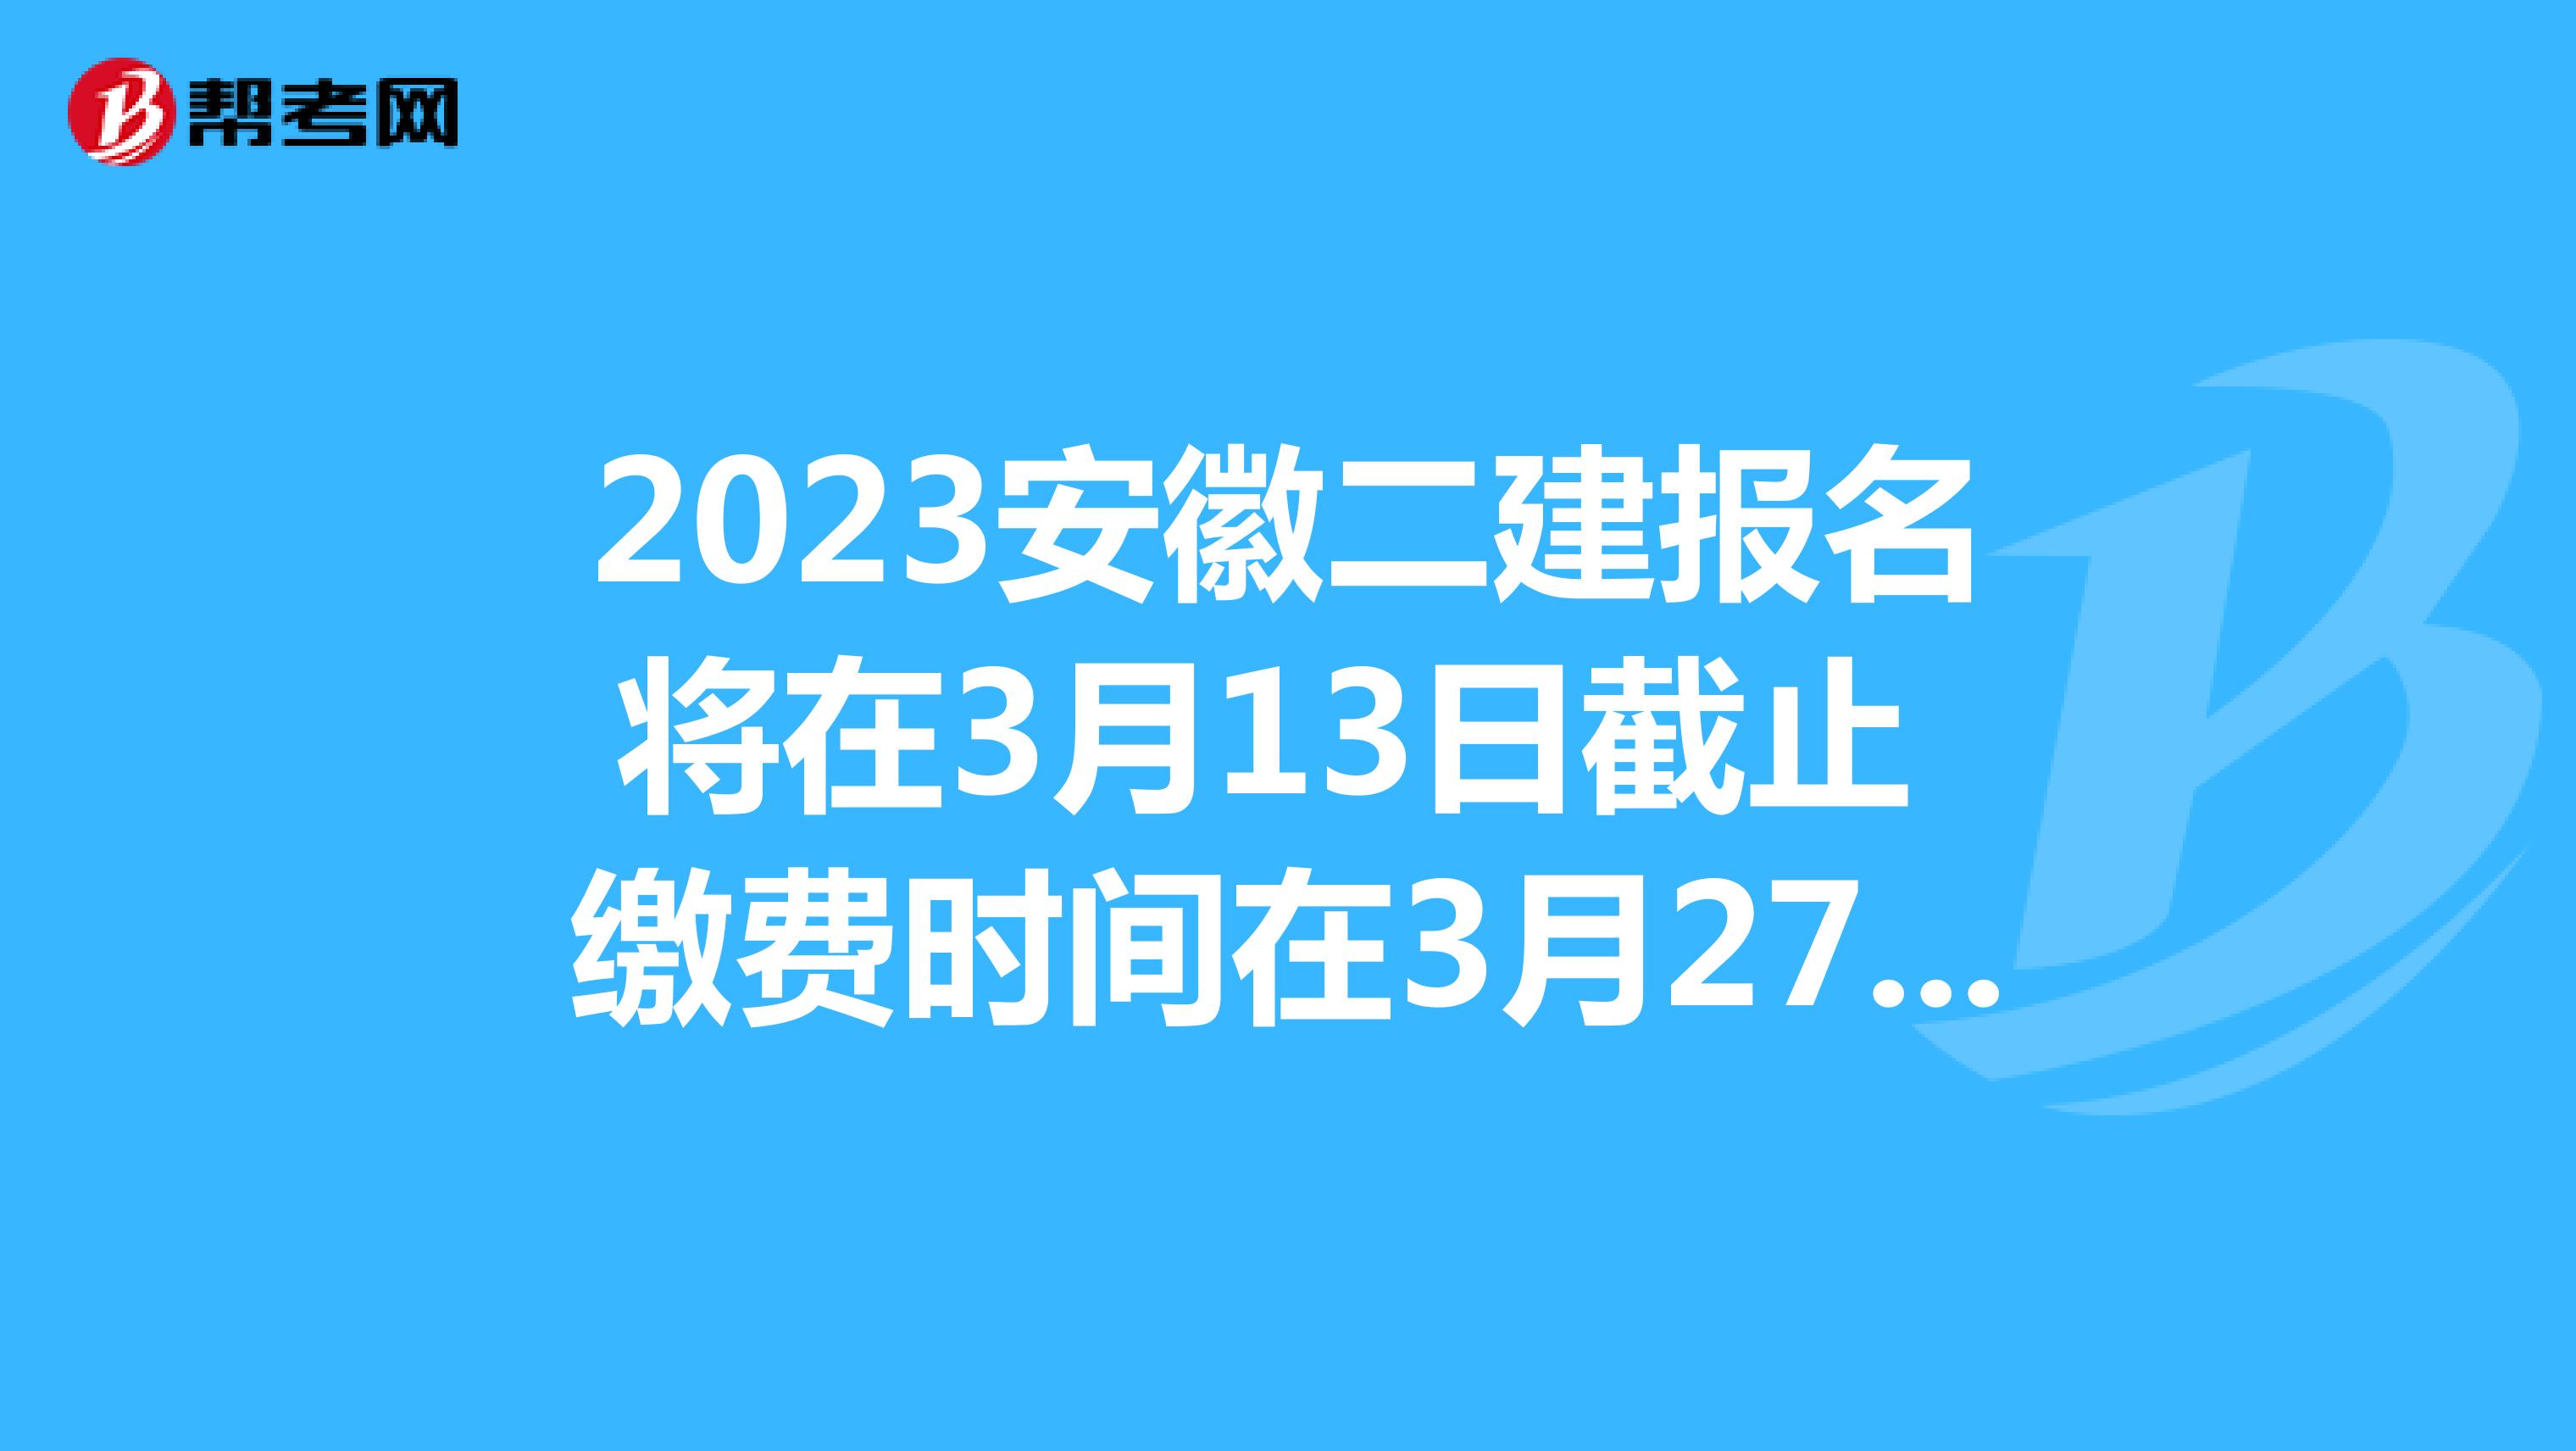 2023安徽二建报名将在3月13日截止 缴费时间在3月27日截止